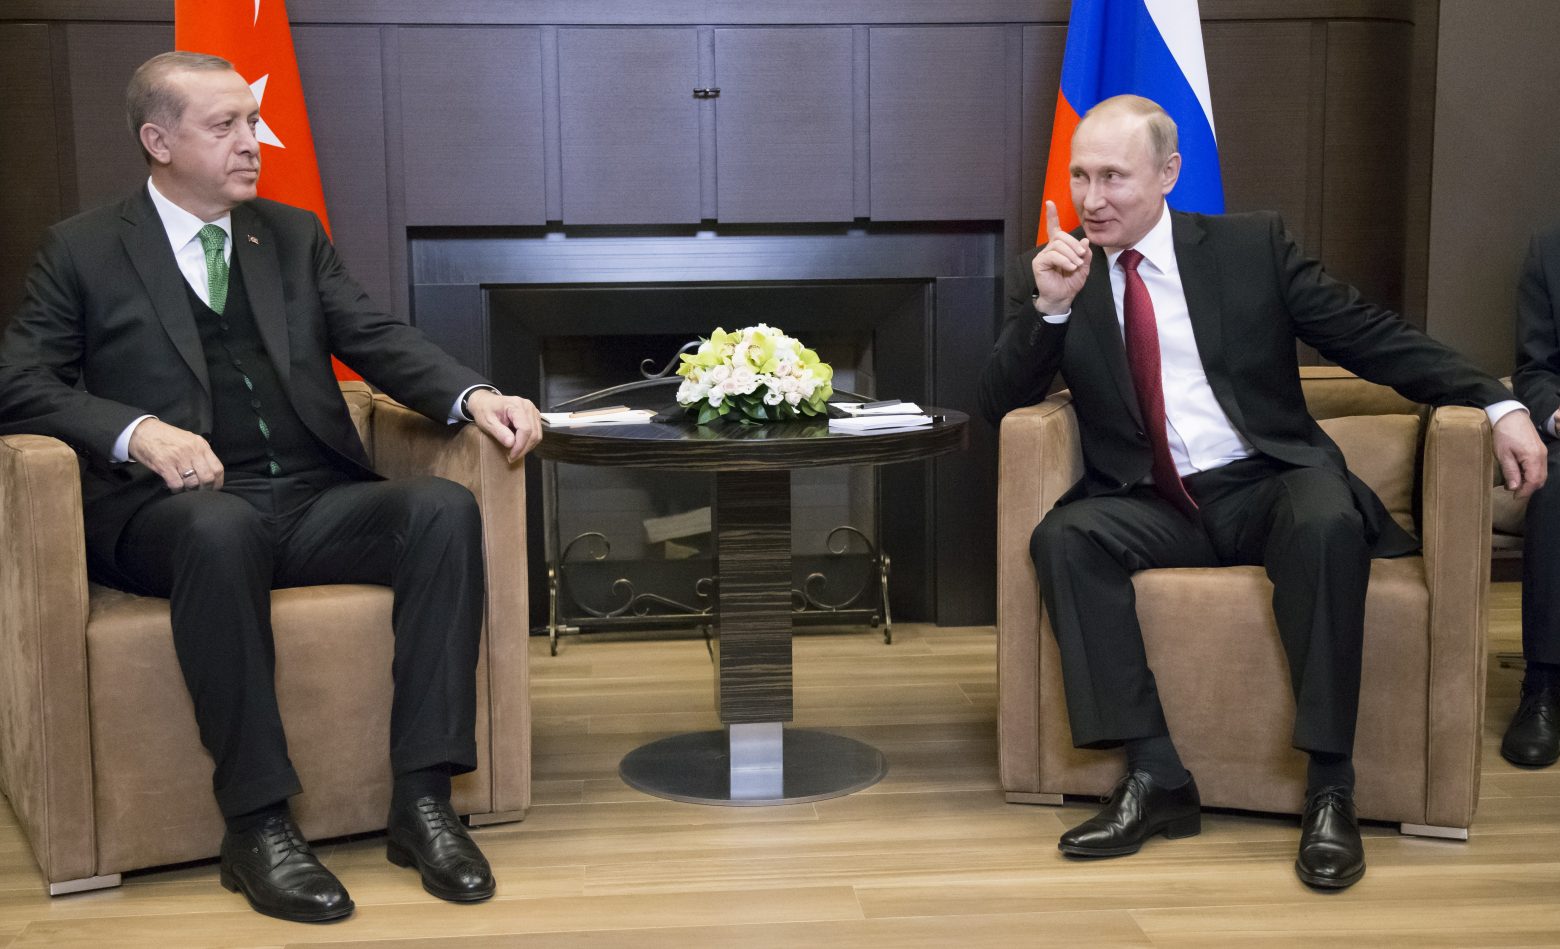 Ρωσία - Το δυνατό χαστούκι του Πούτιν στην Τουρκία ονομάζεται «Ταταρστάν»